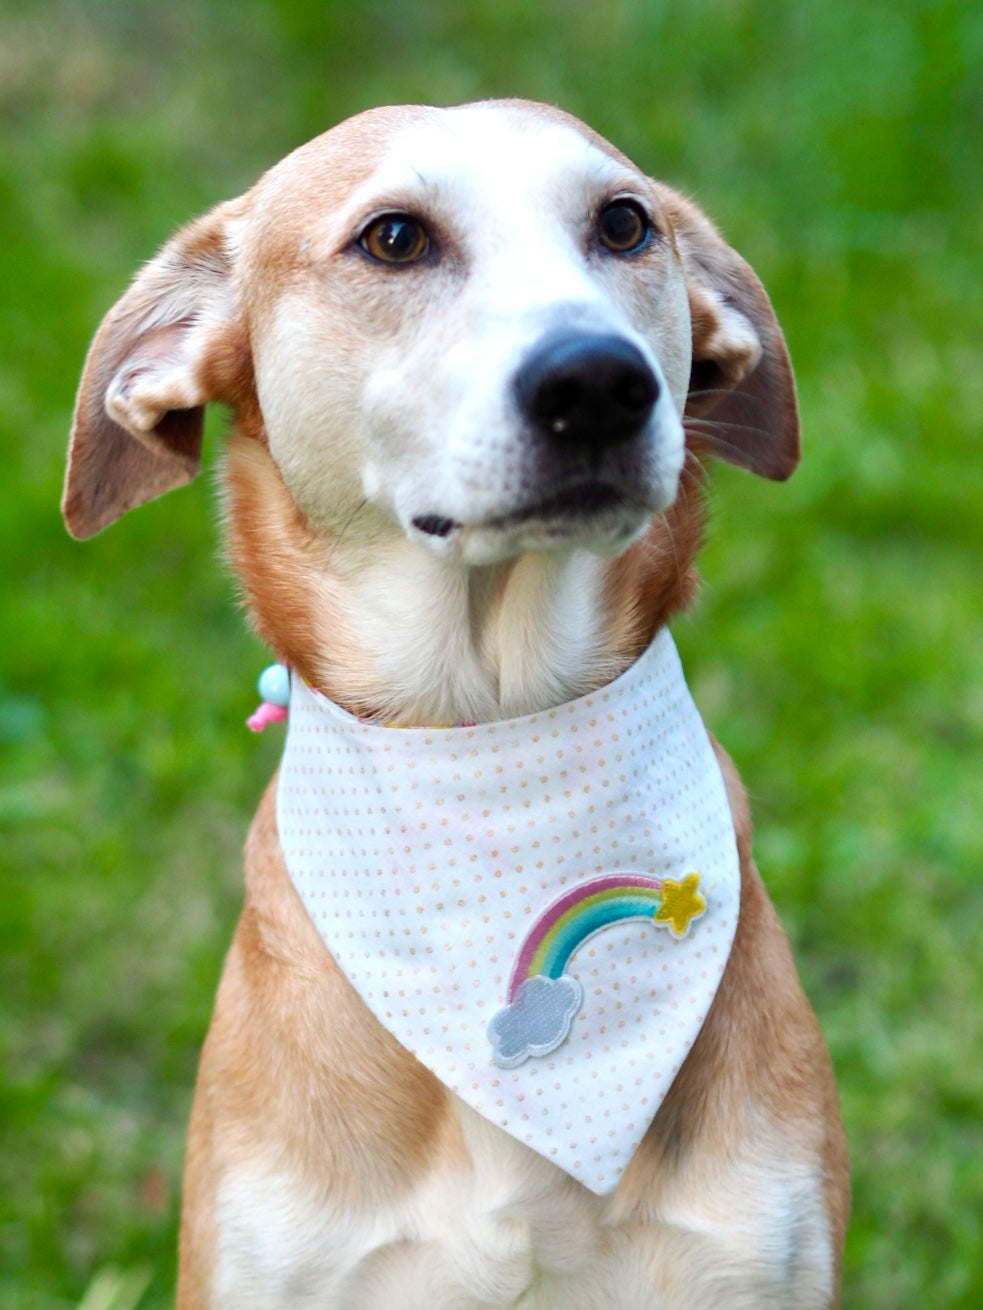 Hundemodel trägt weißes Hundehalstuch mit goldenen Punkten und Regenbogen